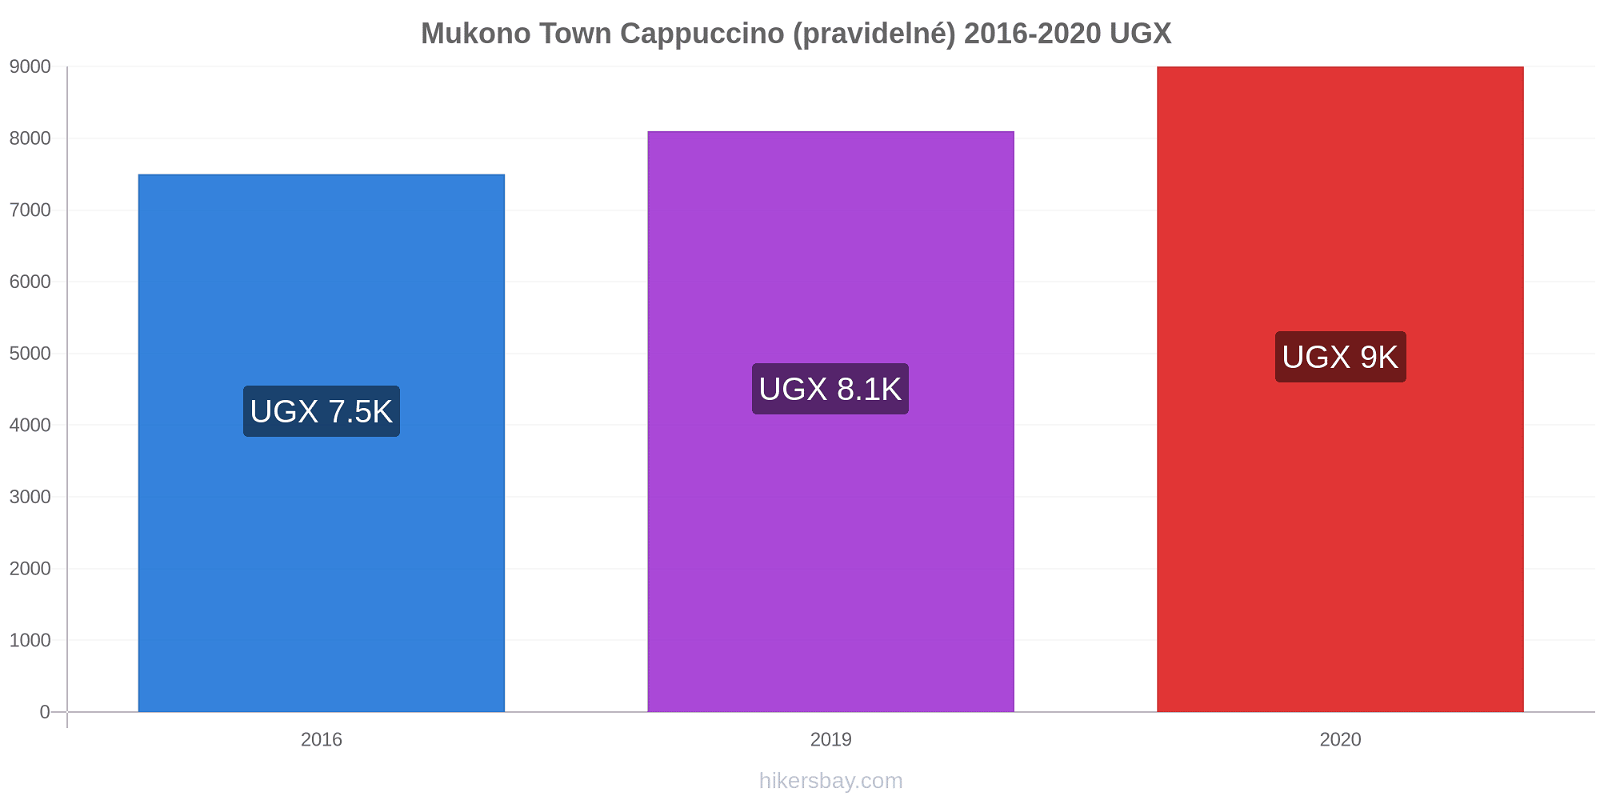 Mukono Town změny cen Cappuccino (pravidelné) hikersbay.com